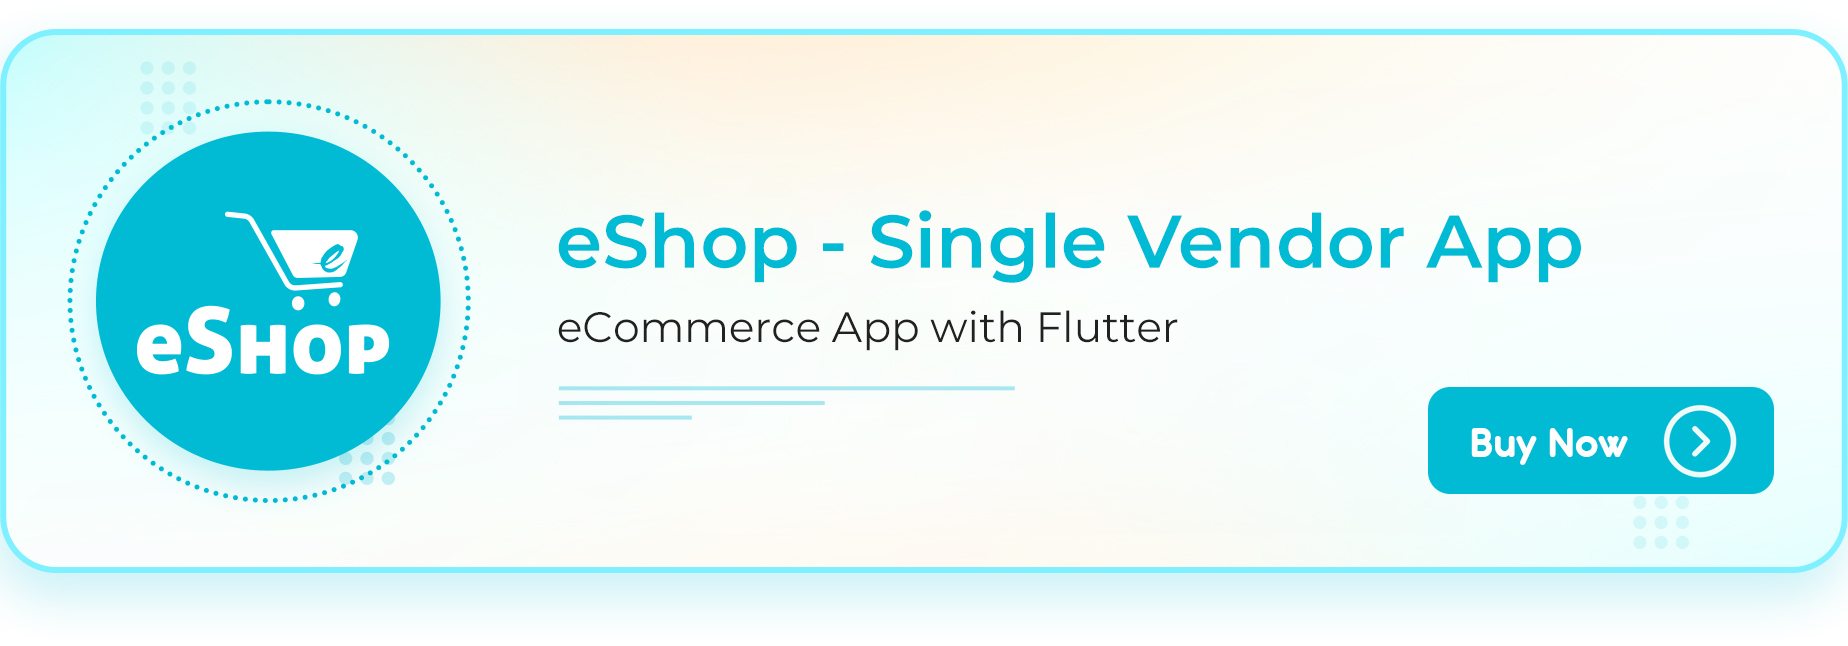 eShop Web- eCommerce Single Vendor Website